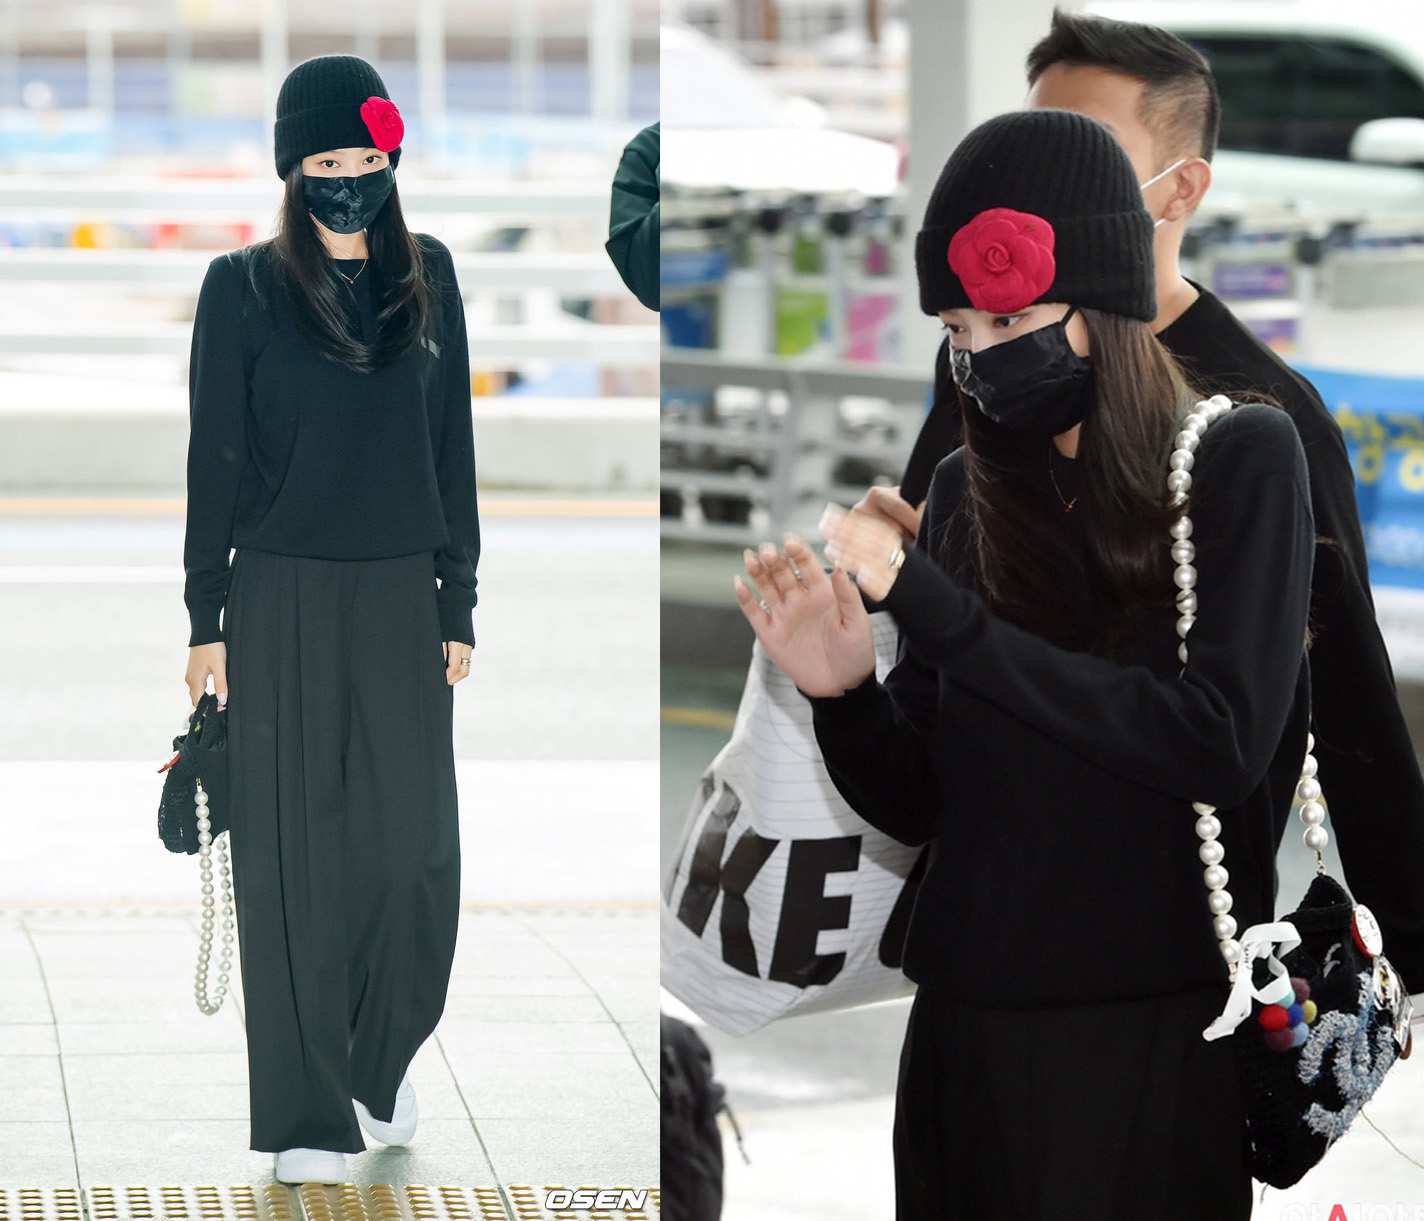 Jennie trùm kín đen như ninja tại sân bay, nhưng có 1 điểm khiến fan từ xa đã nhận ra ngay - Ảnh 2